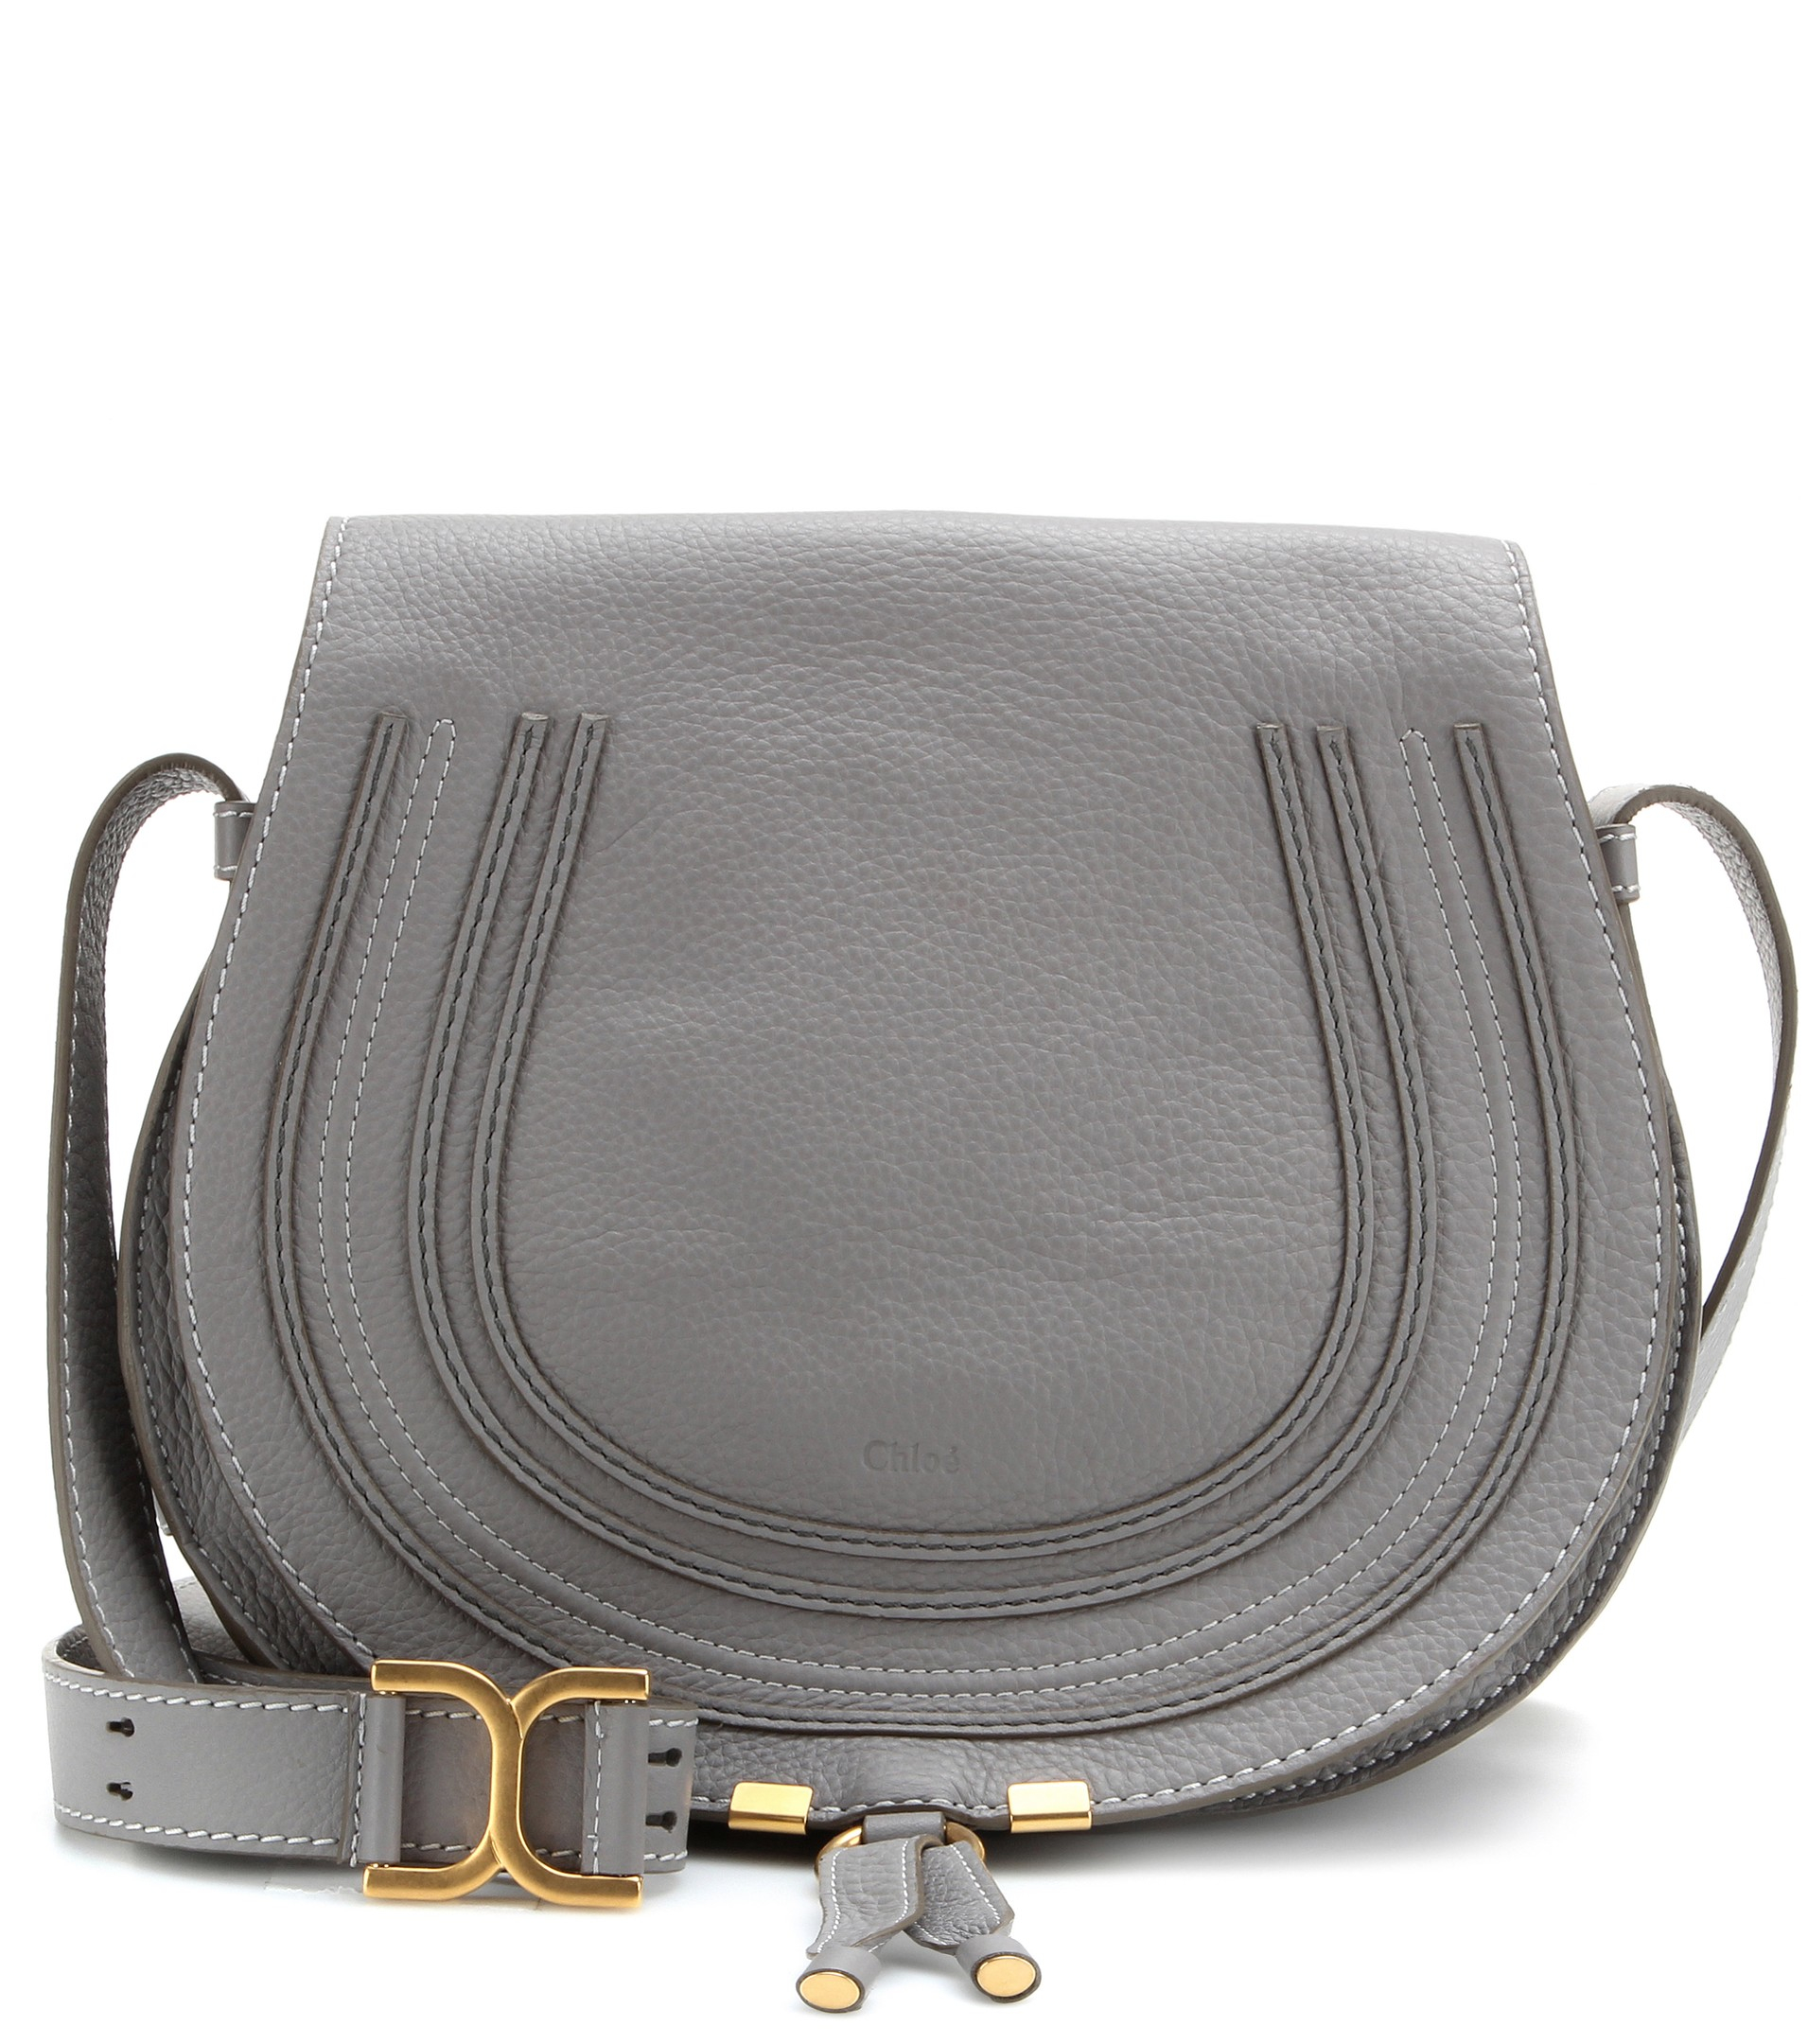 Lyst - Chloé Marcie Leather Crossbody Bag in Gray